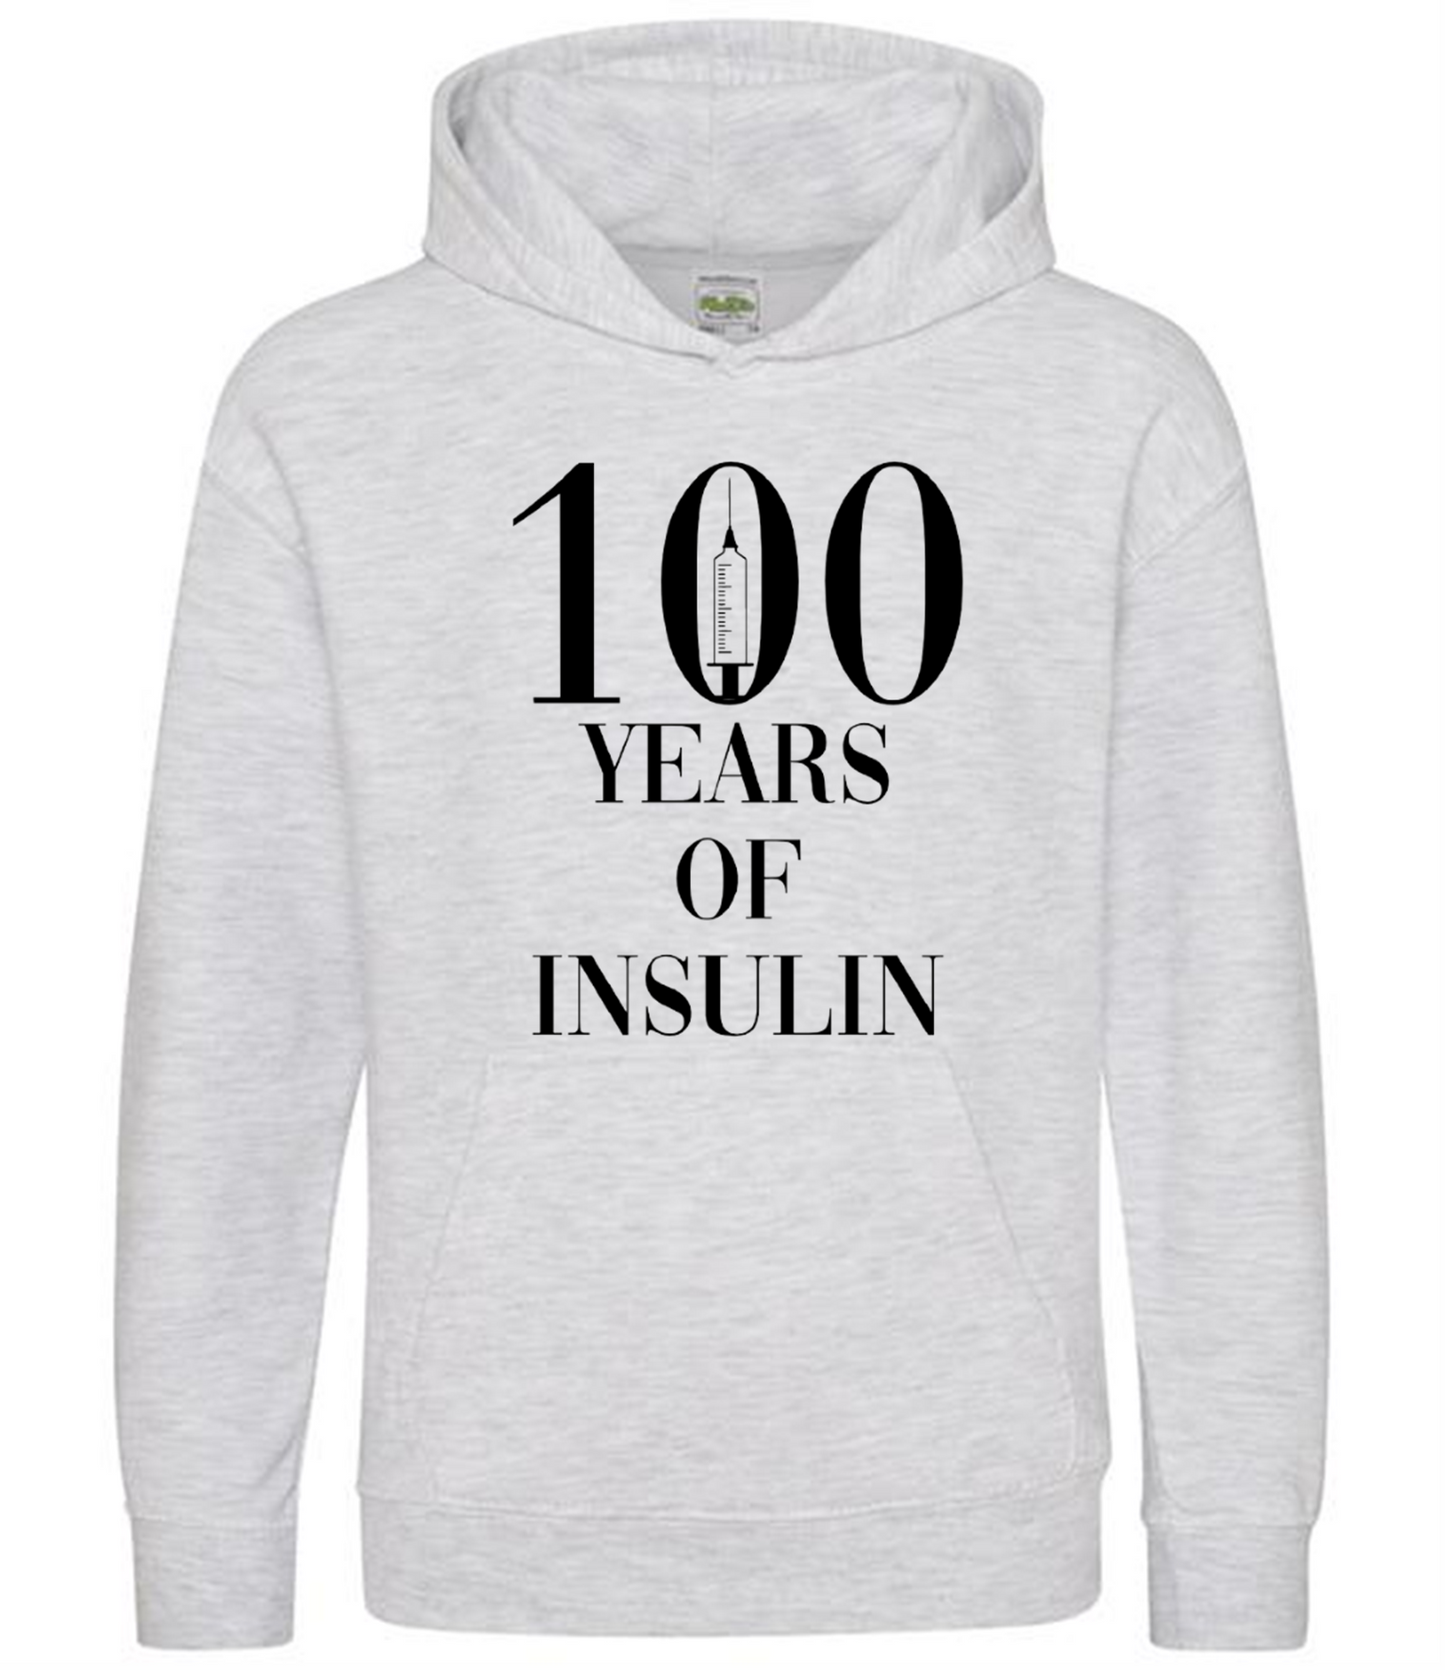 100 Years Of Insulin Kids Hoodie